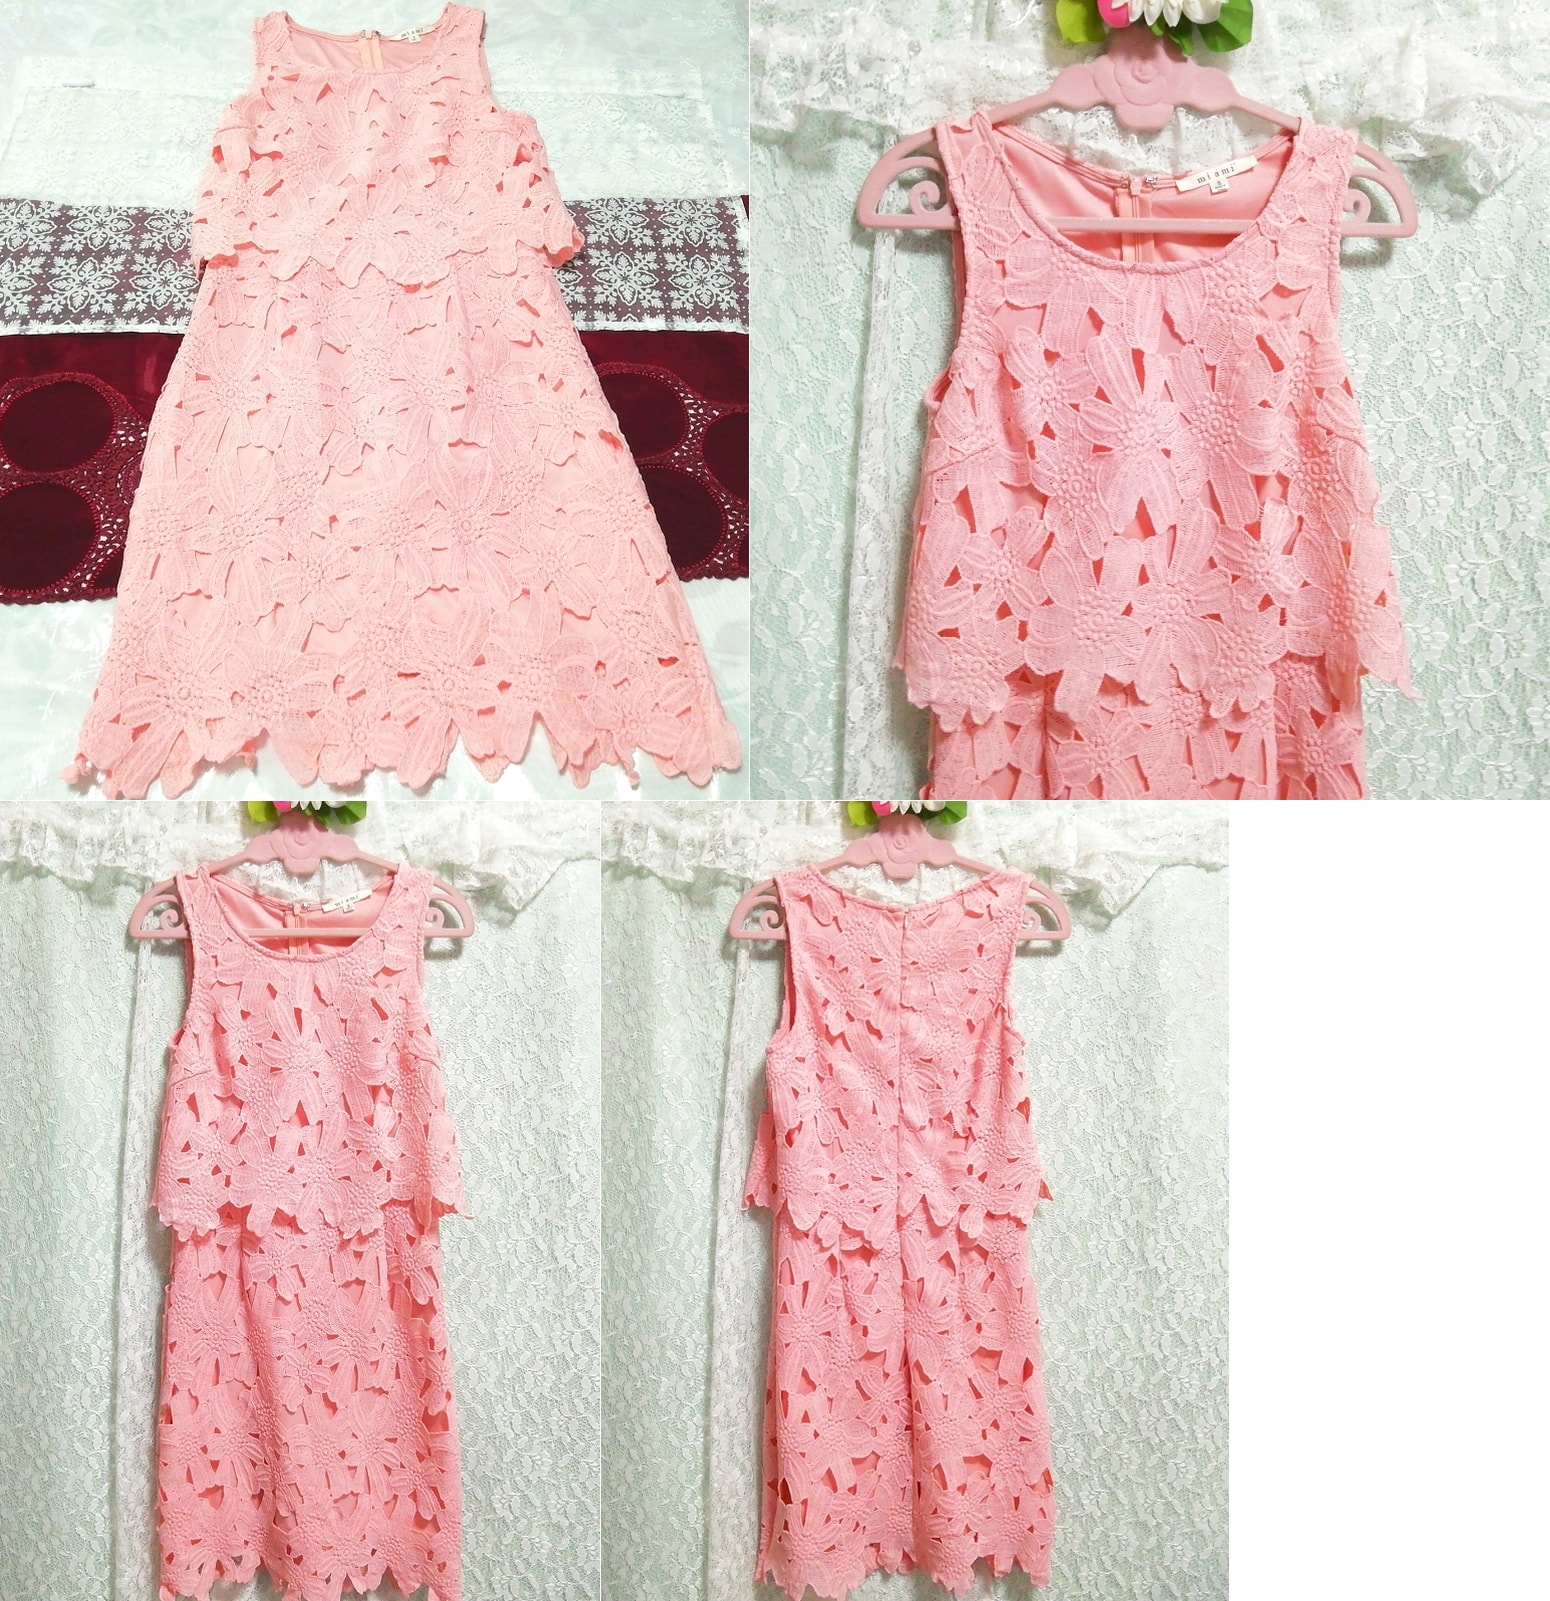 ピンクレースニット ノースリーブ ネグリジェ ナイトウェア ハーフワンピース Pink lace knit sleeveless negligee nightwear half dress, ワンピース, ひざ丈スカート, Mサイズ